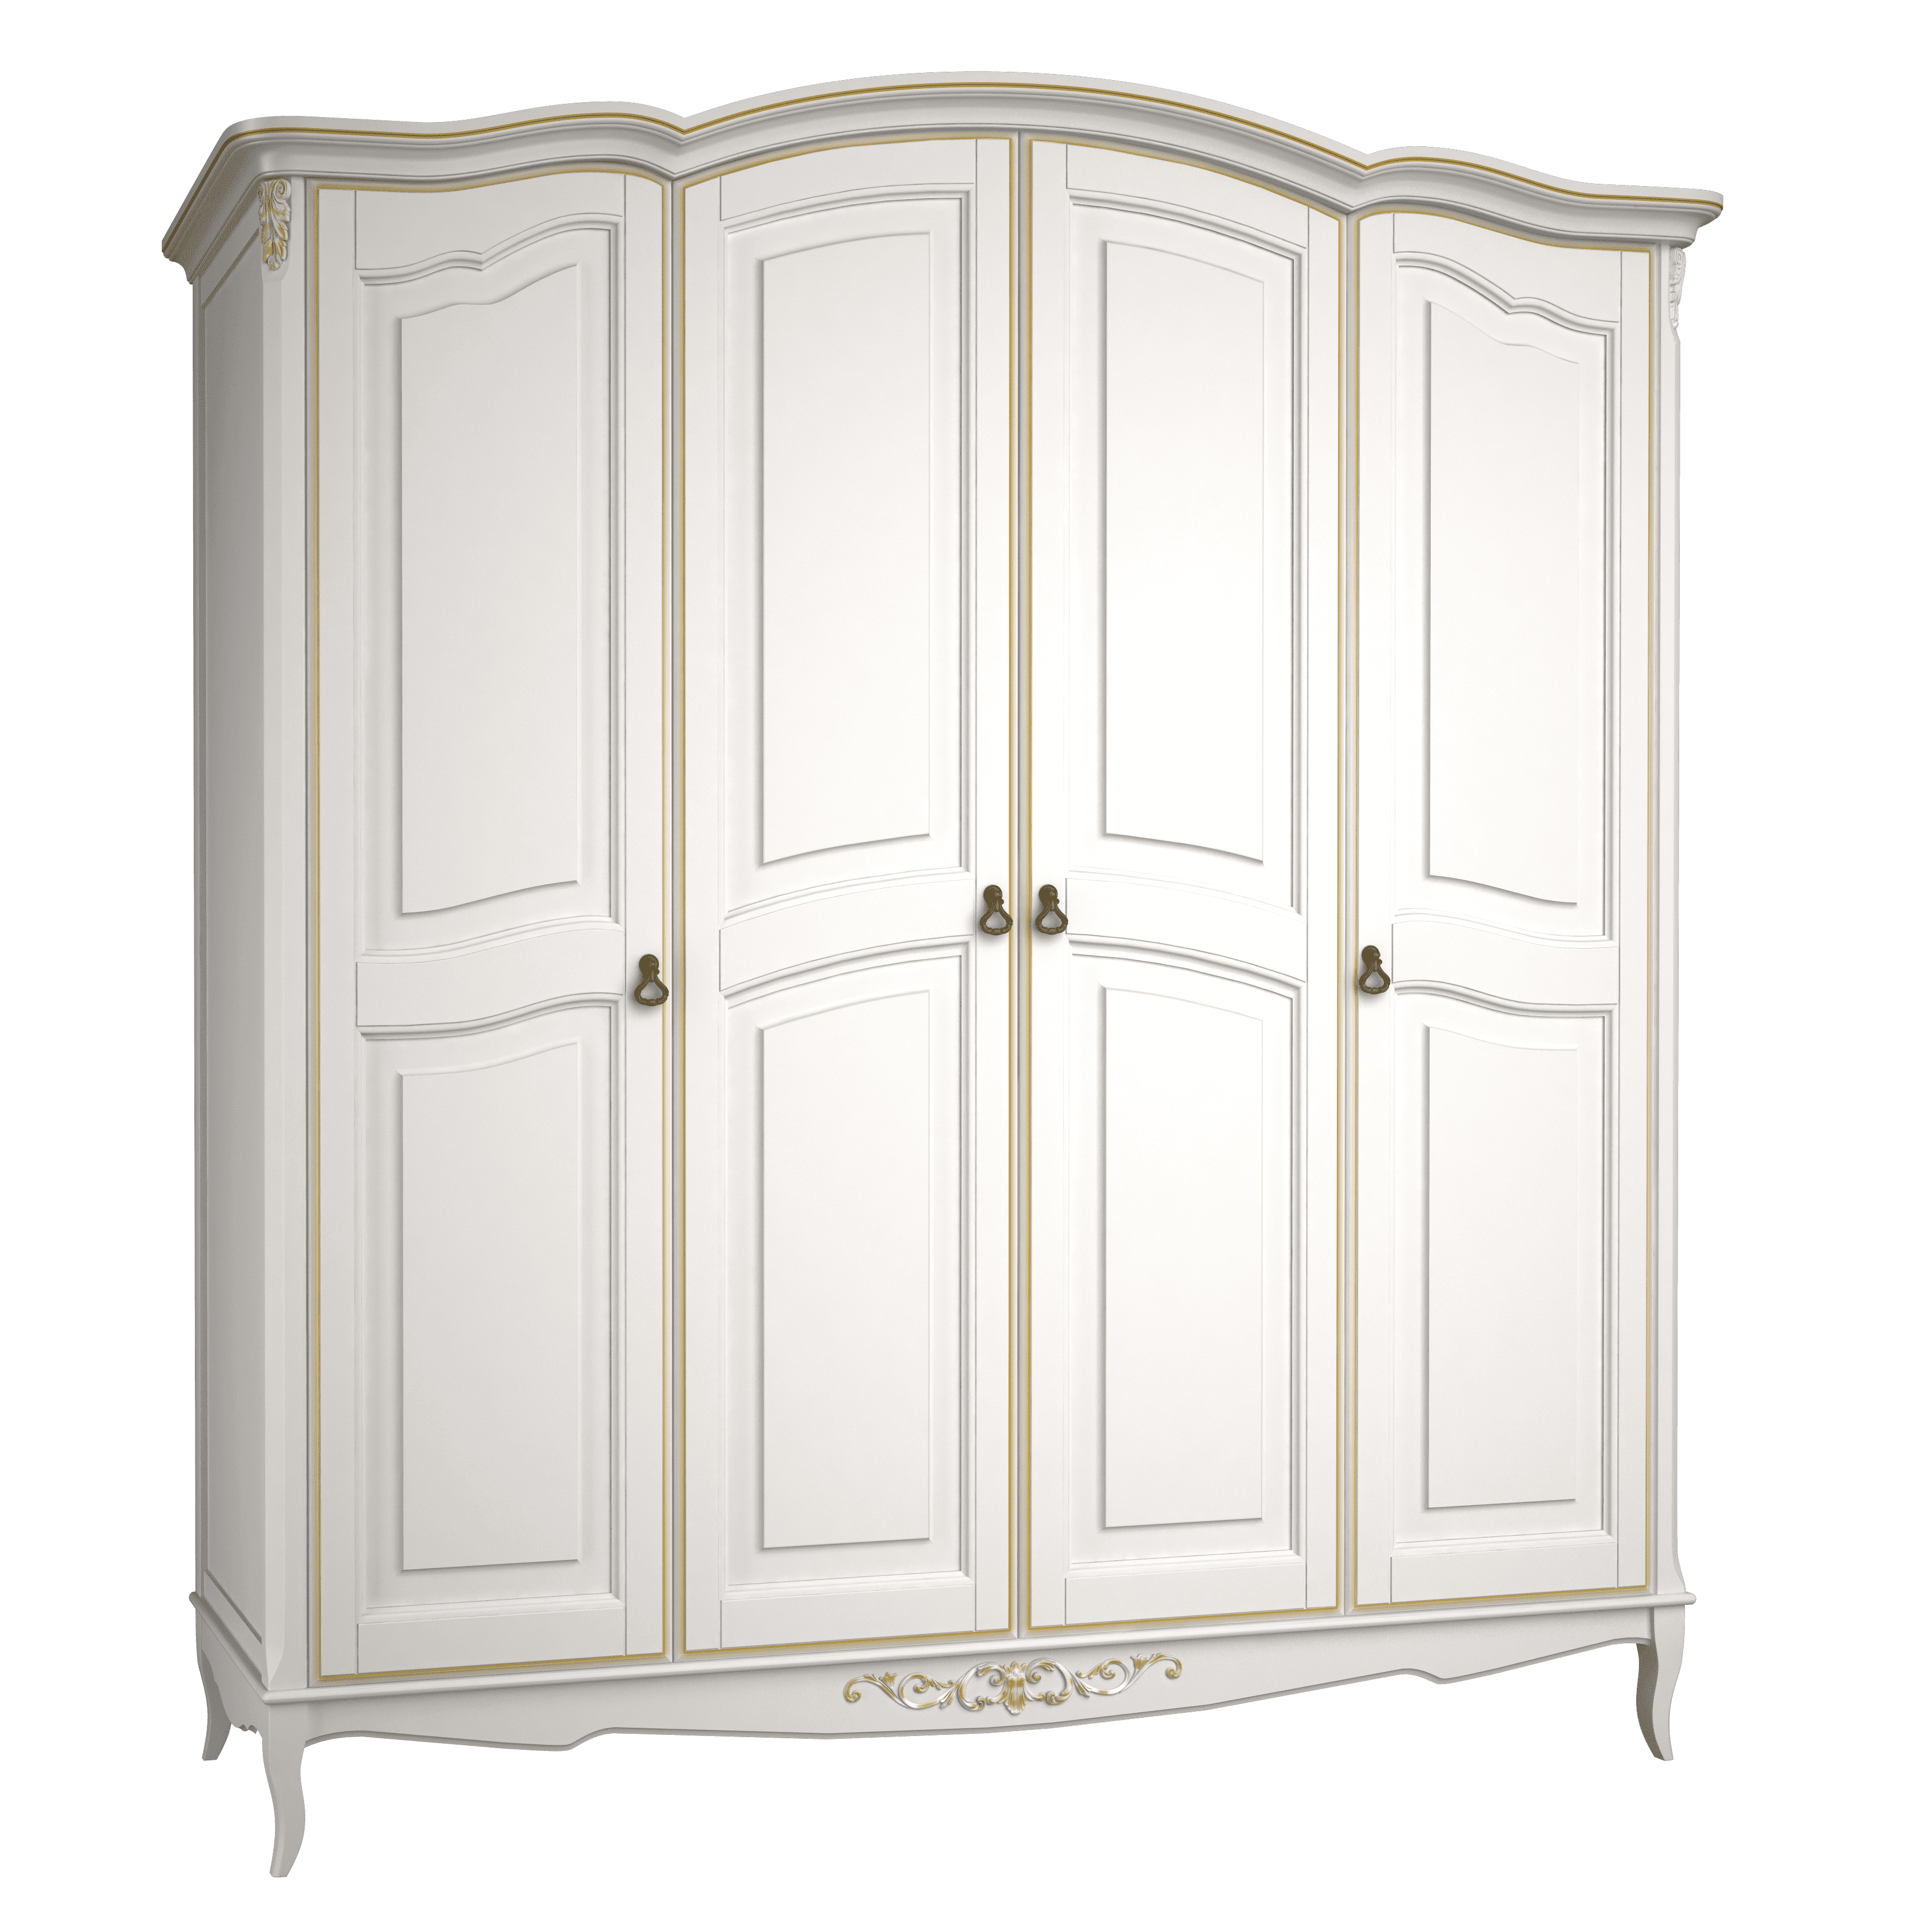 Шкаф платяной Aletan Provence, 4-х дверный, цвет: слоновая кость-золото 209х66х226 см (B804G)B804G